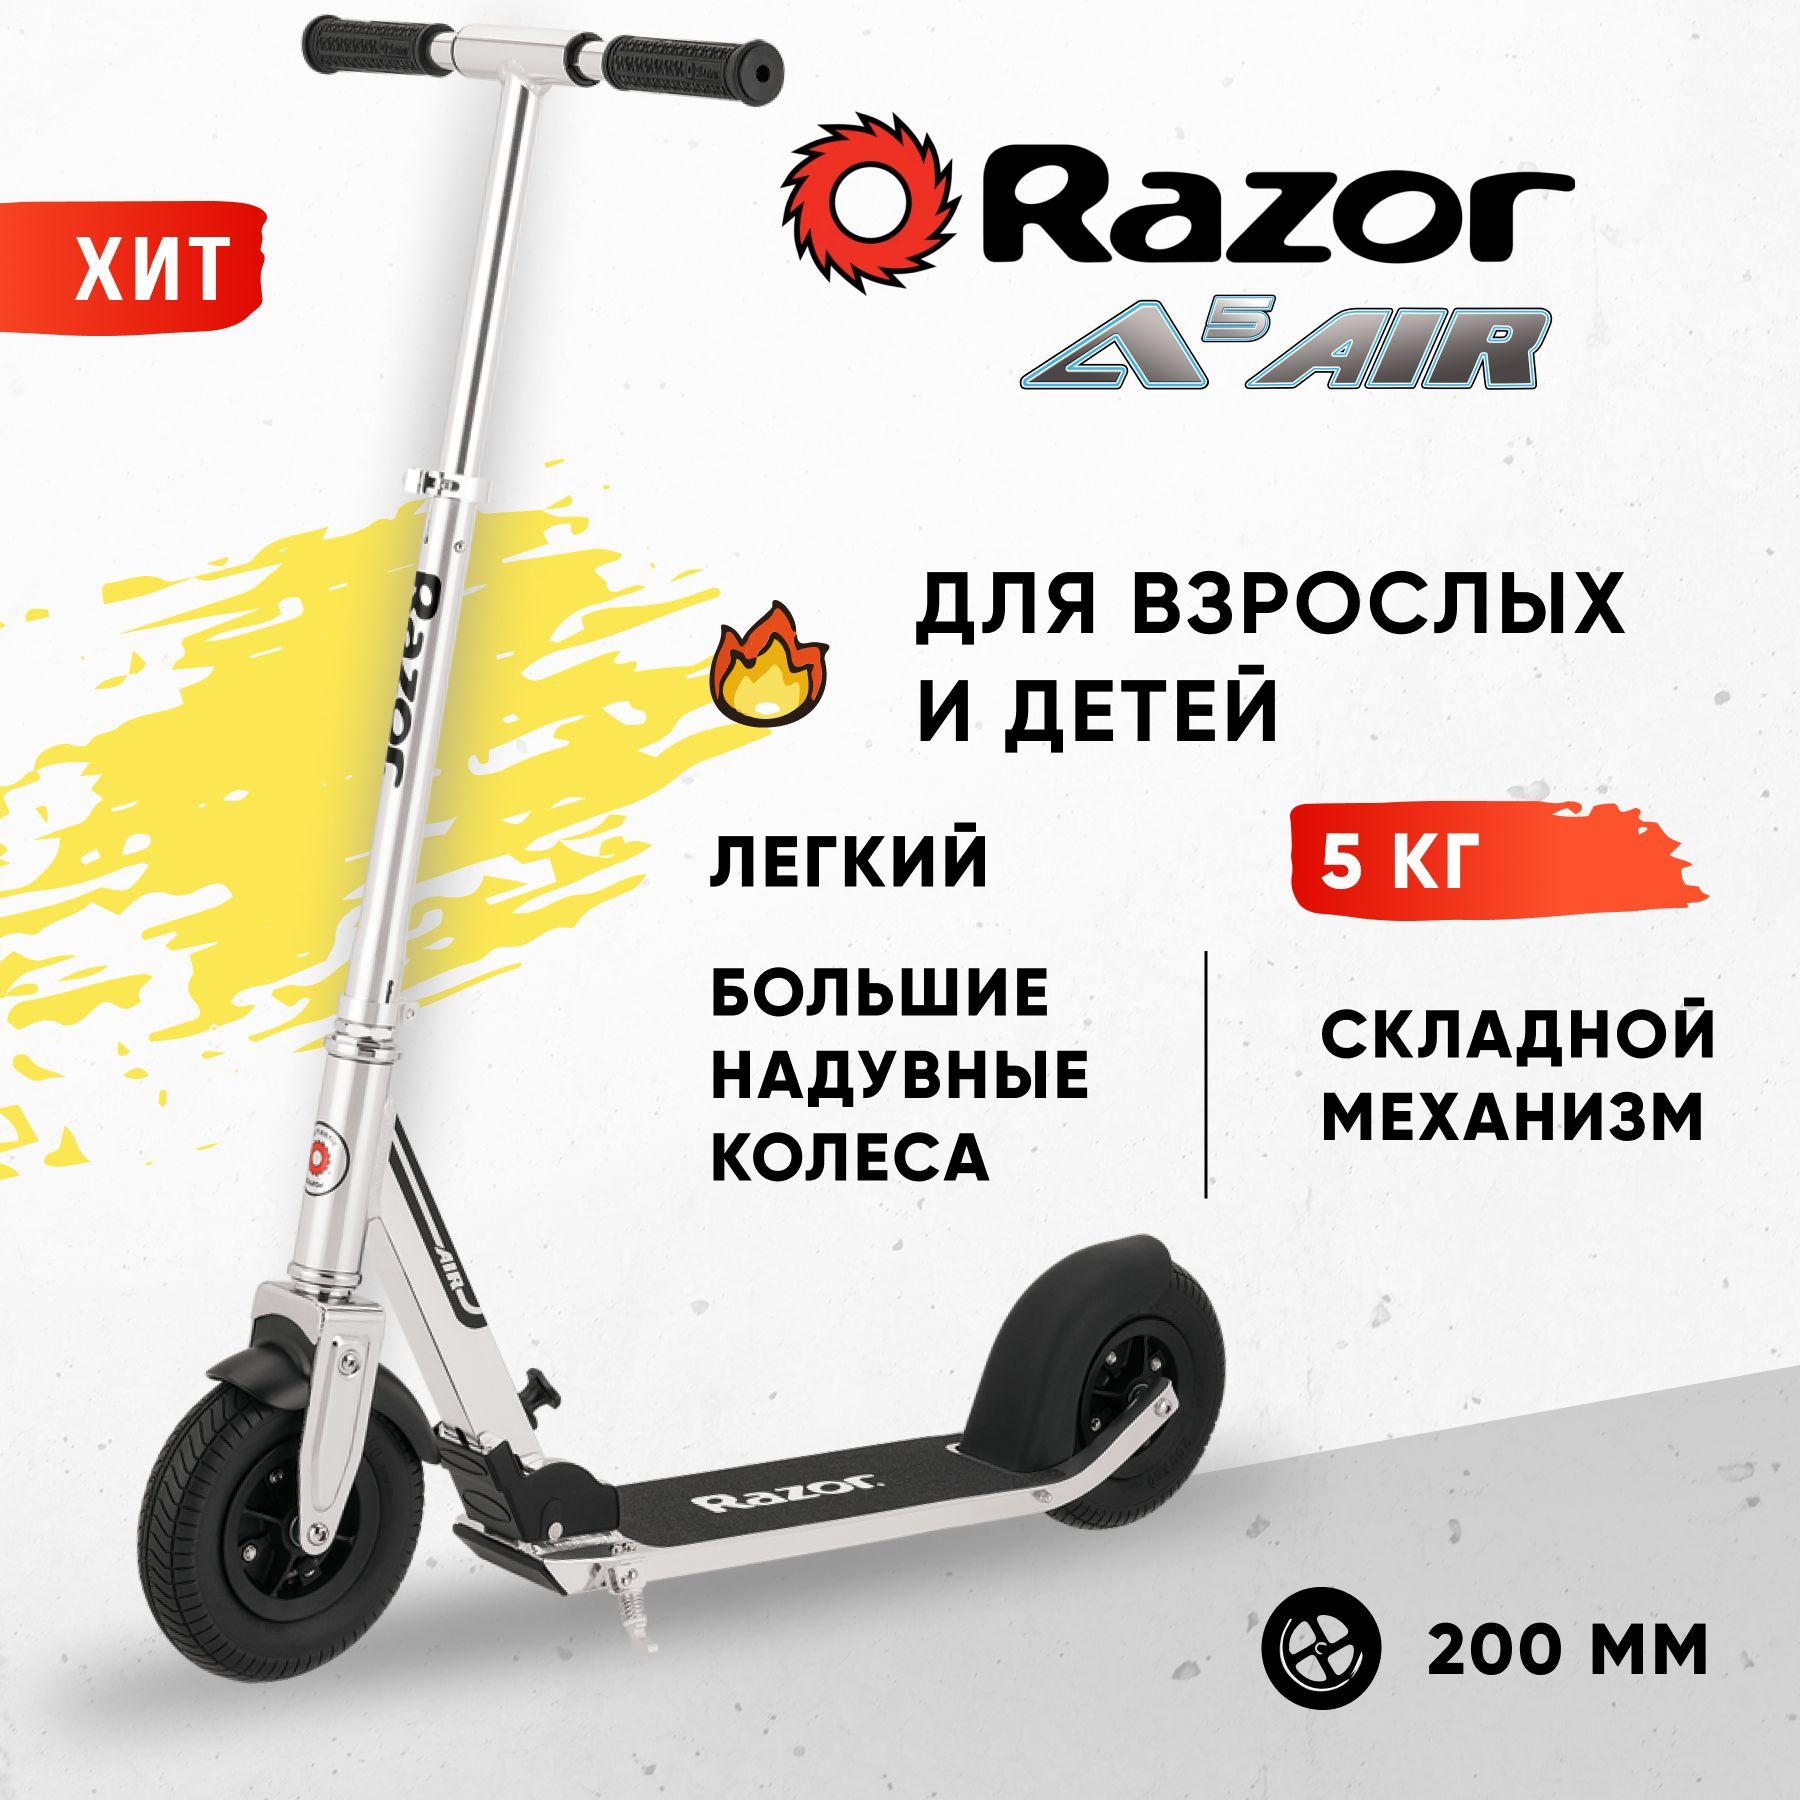 Razor | Городской самокат на надувных колёсах Razor A5 AIR - серебристый